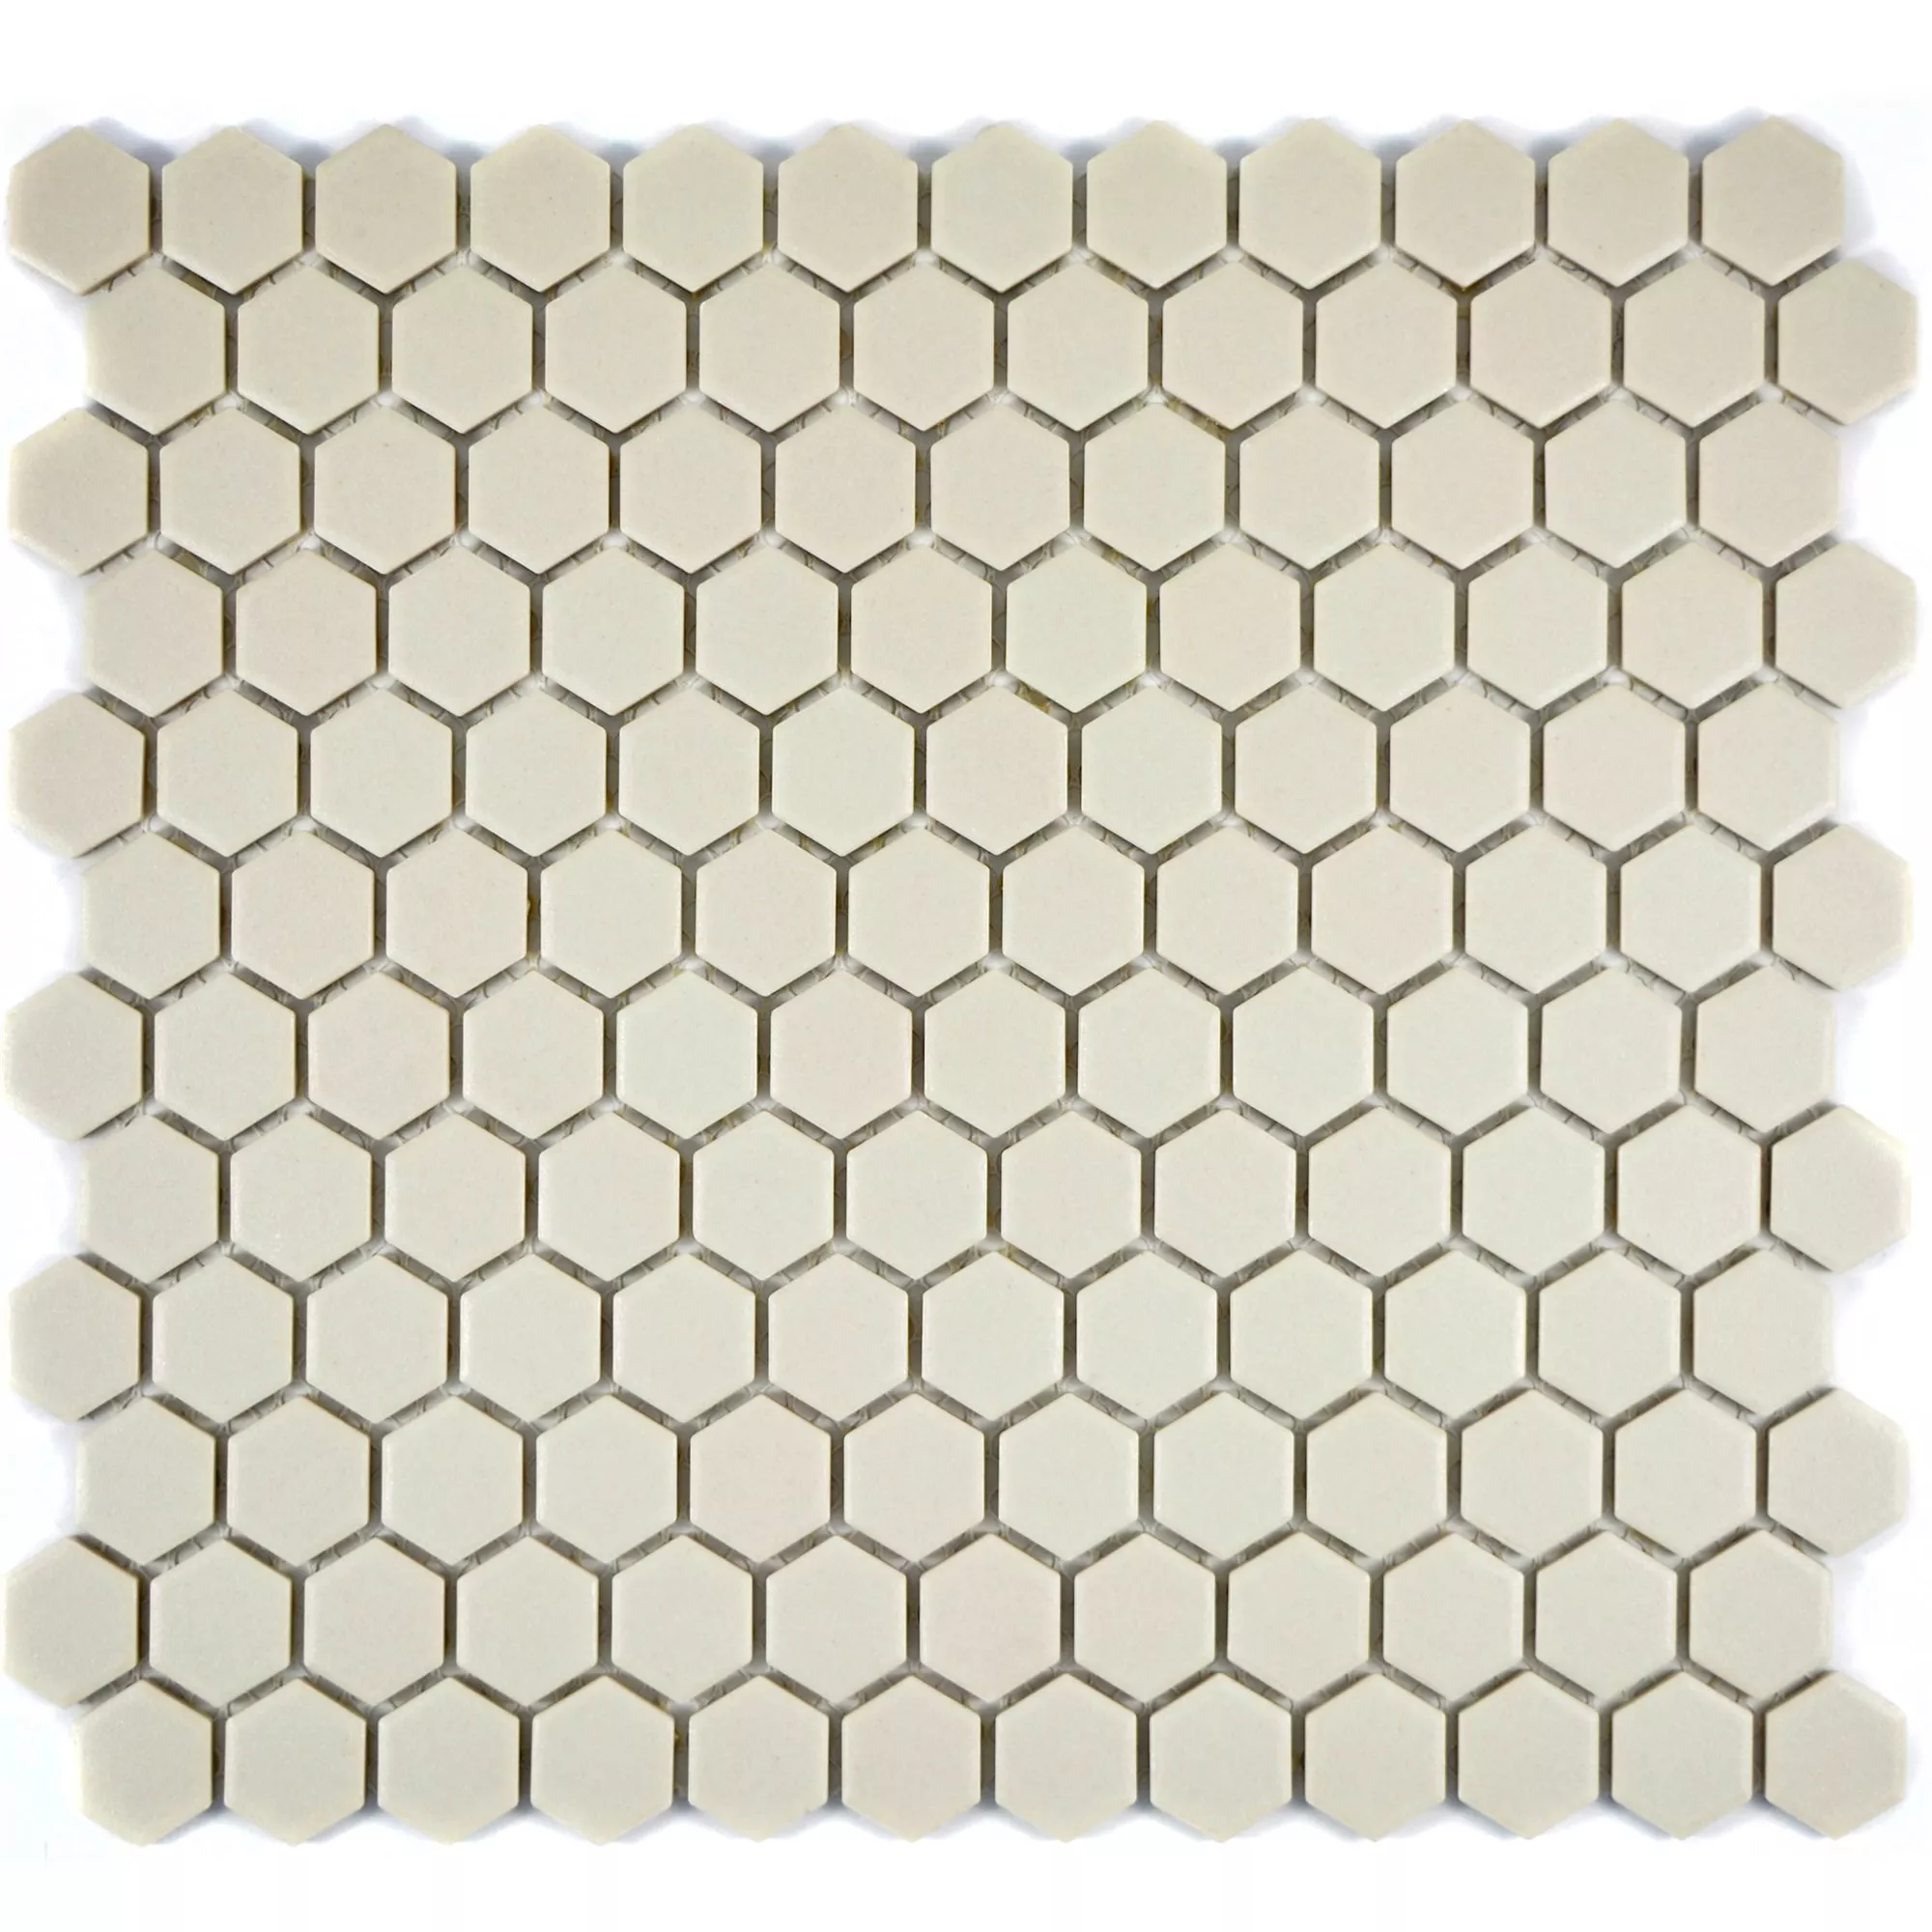 Campione Ceramica Mosaico Hexagon Zeinal Non Smaltato Beige Chiaro R10B